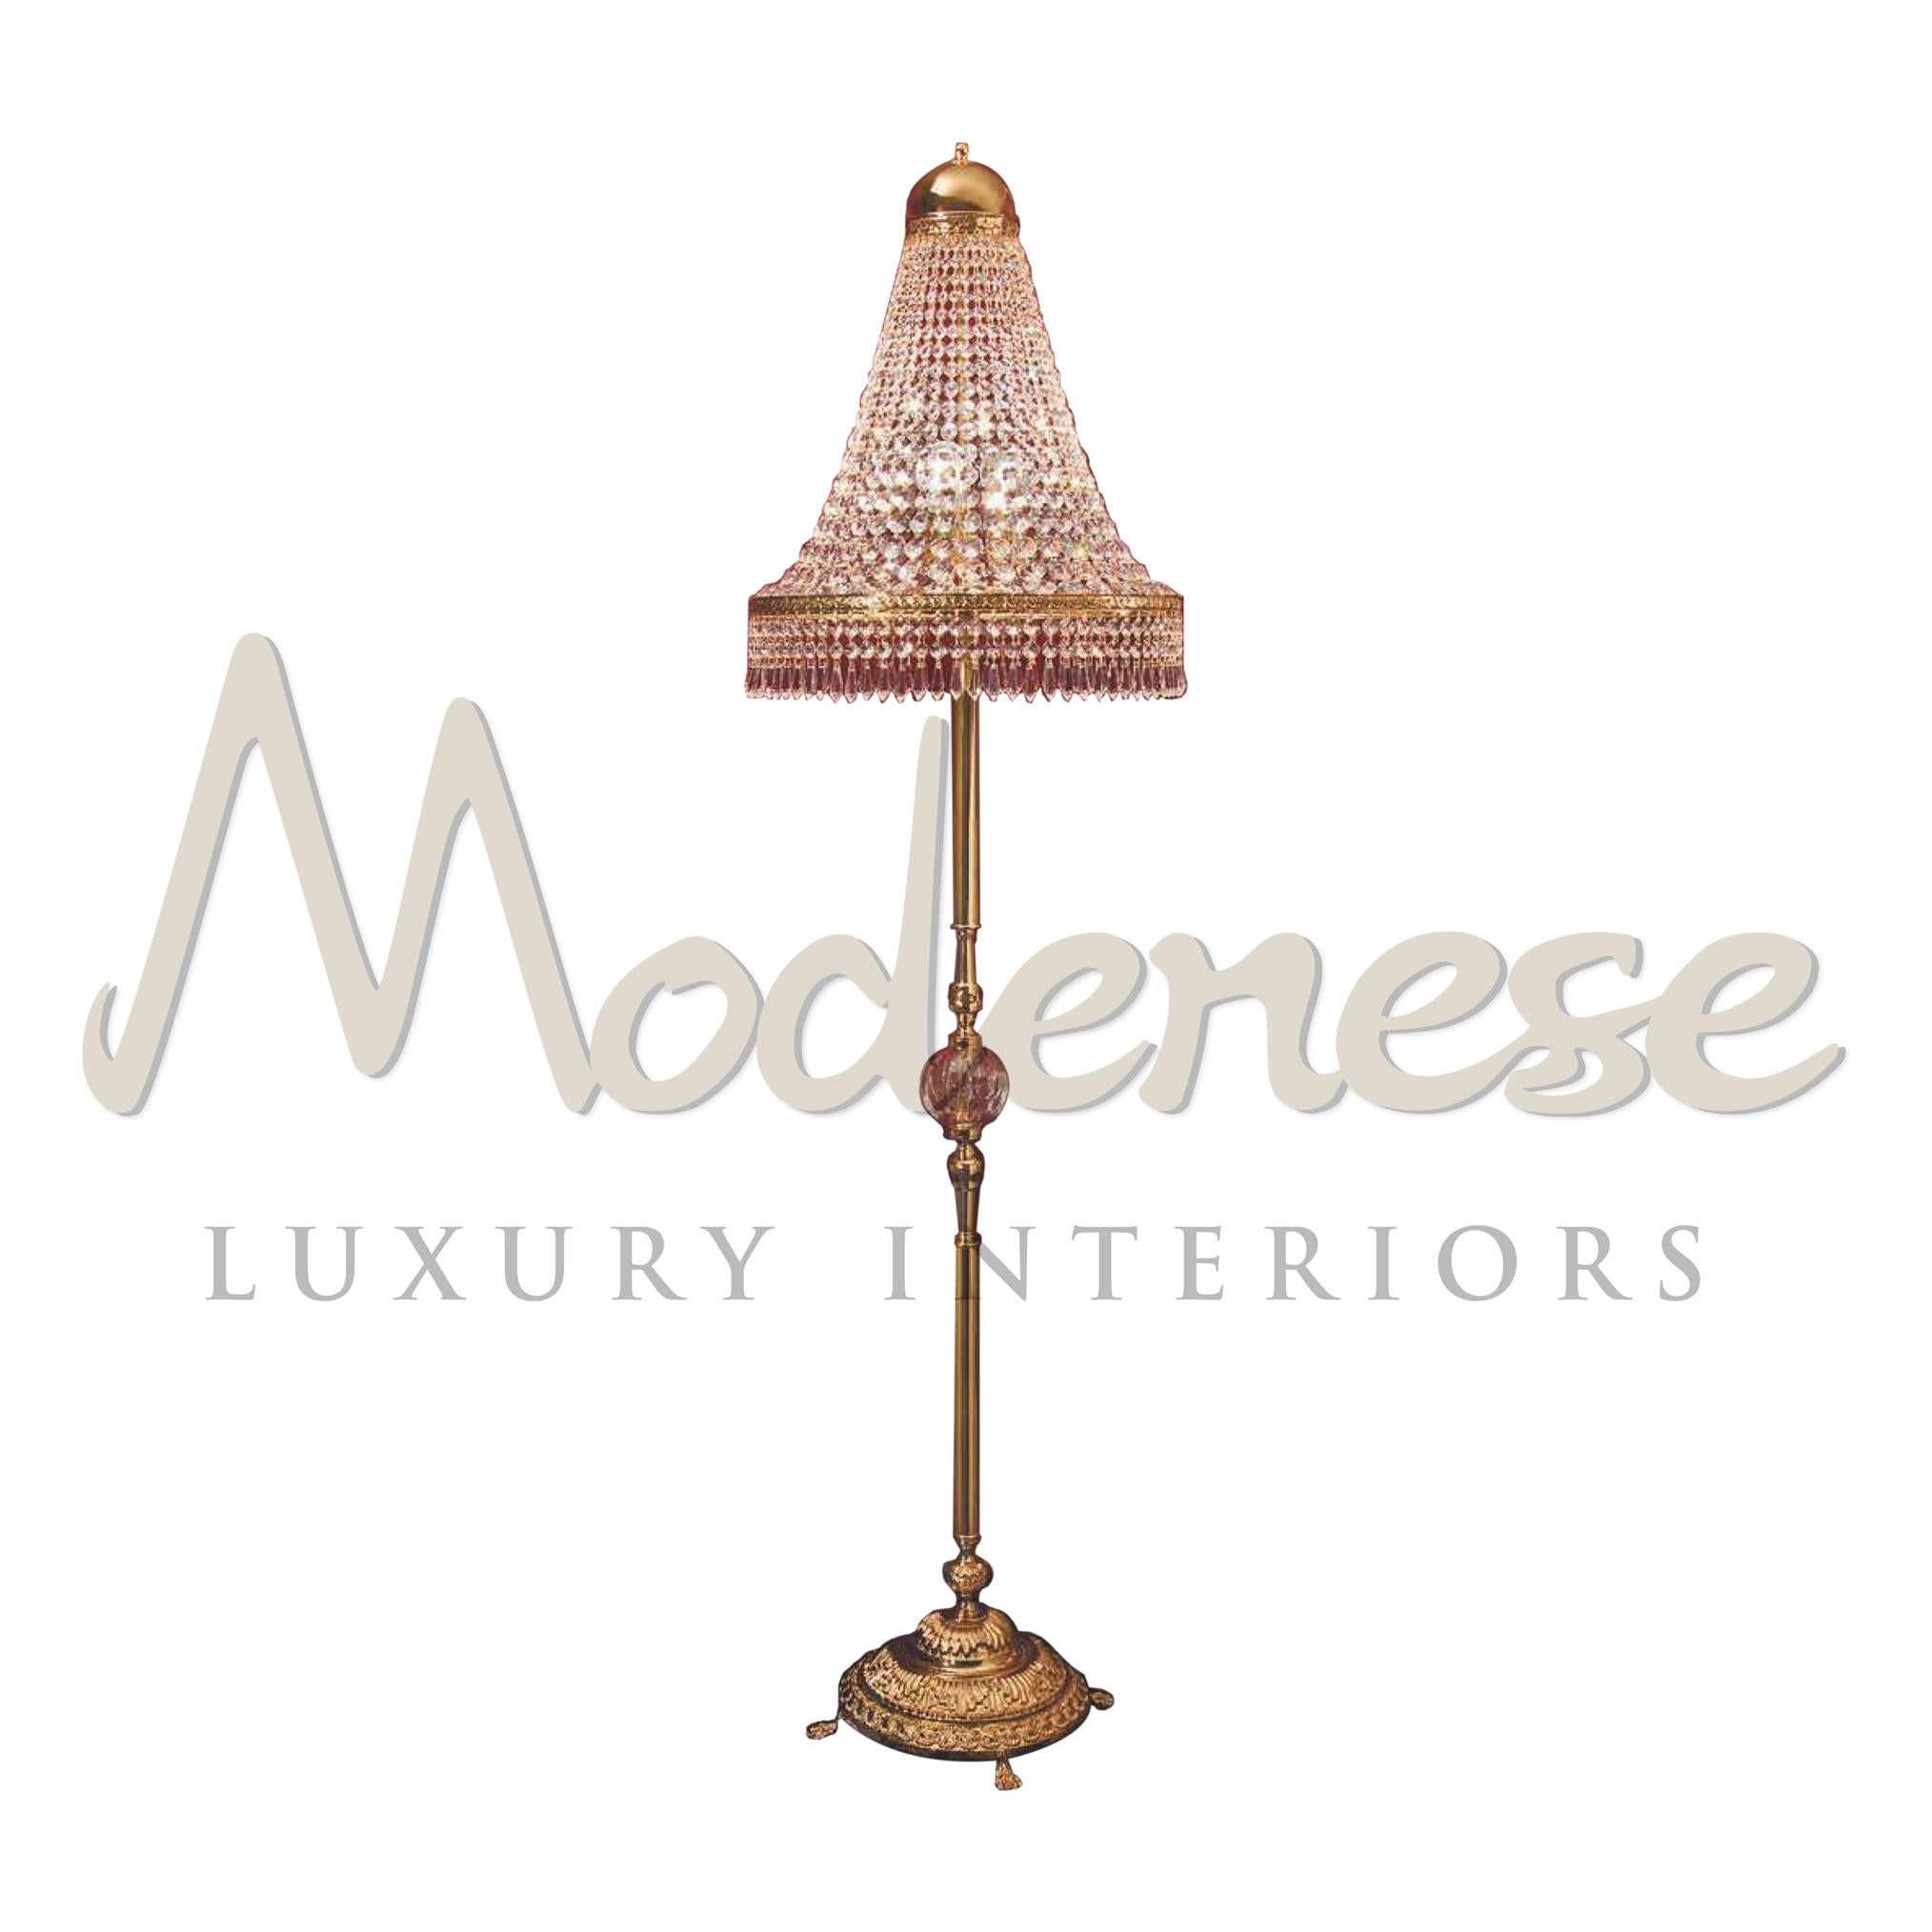 Diese Stehleuchte Modenese Luxury Interiors mit 3 Leuchten vereint Eleganz und Reichtum. Der handgefertigte Messingsockel ist mit 24-karätiger Goldplatte veredelt und mit Scholerakristallen gekrönt, die einen schönen Akzent setzen. Dieses Modell